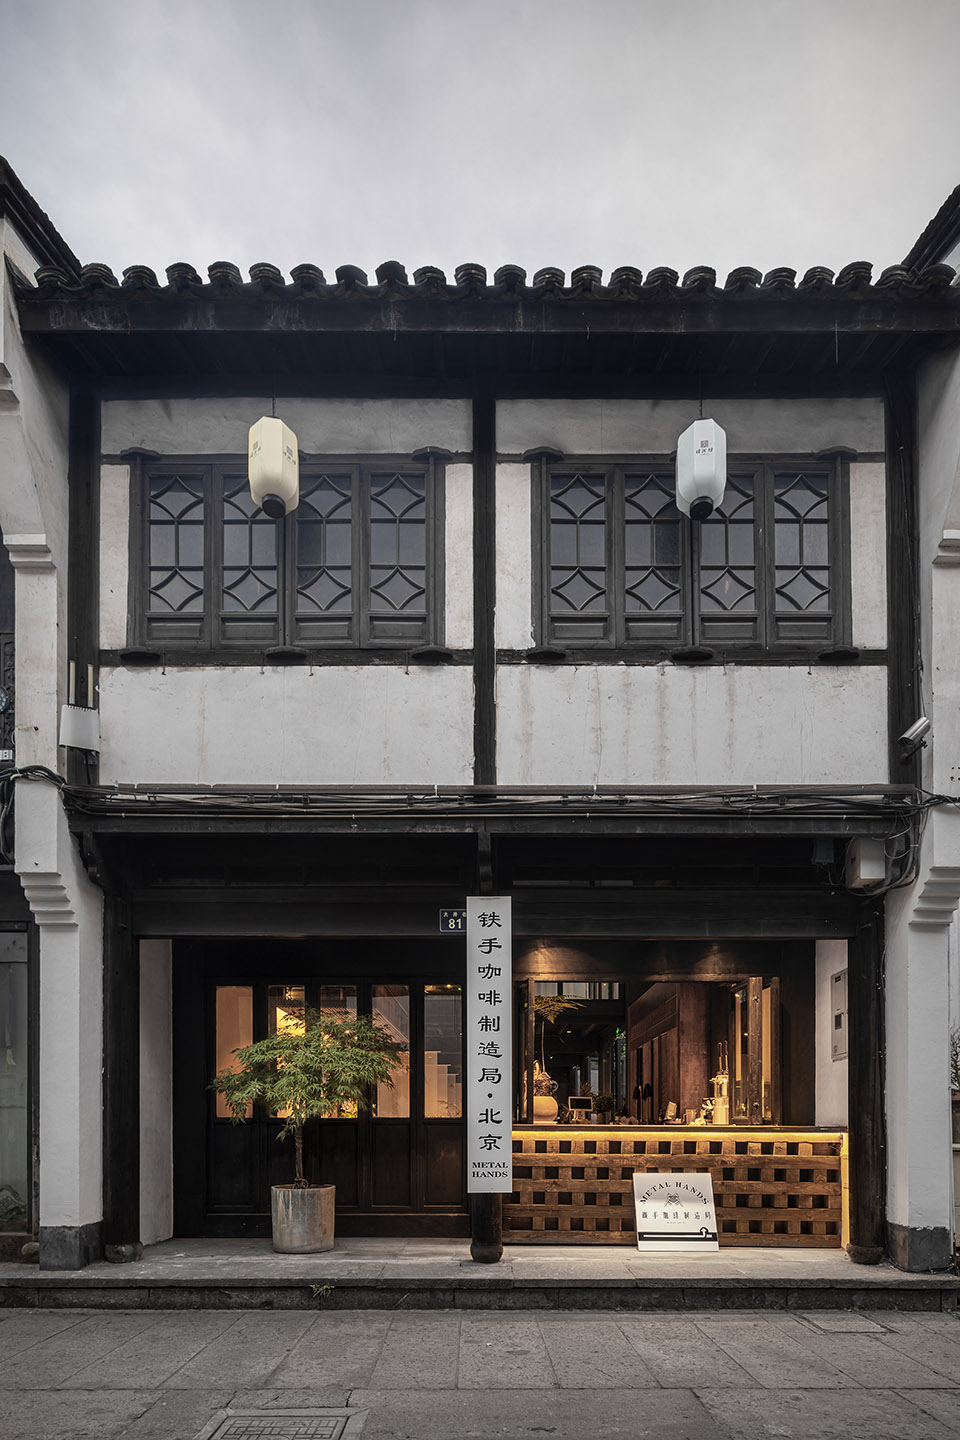 “Metal Hands铁手咖啡制造局”品牌咖啡厅设计·杭州 | Daga大观建筑